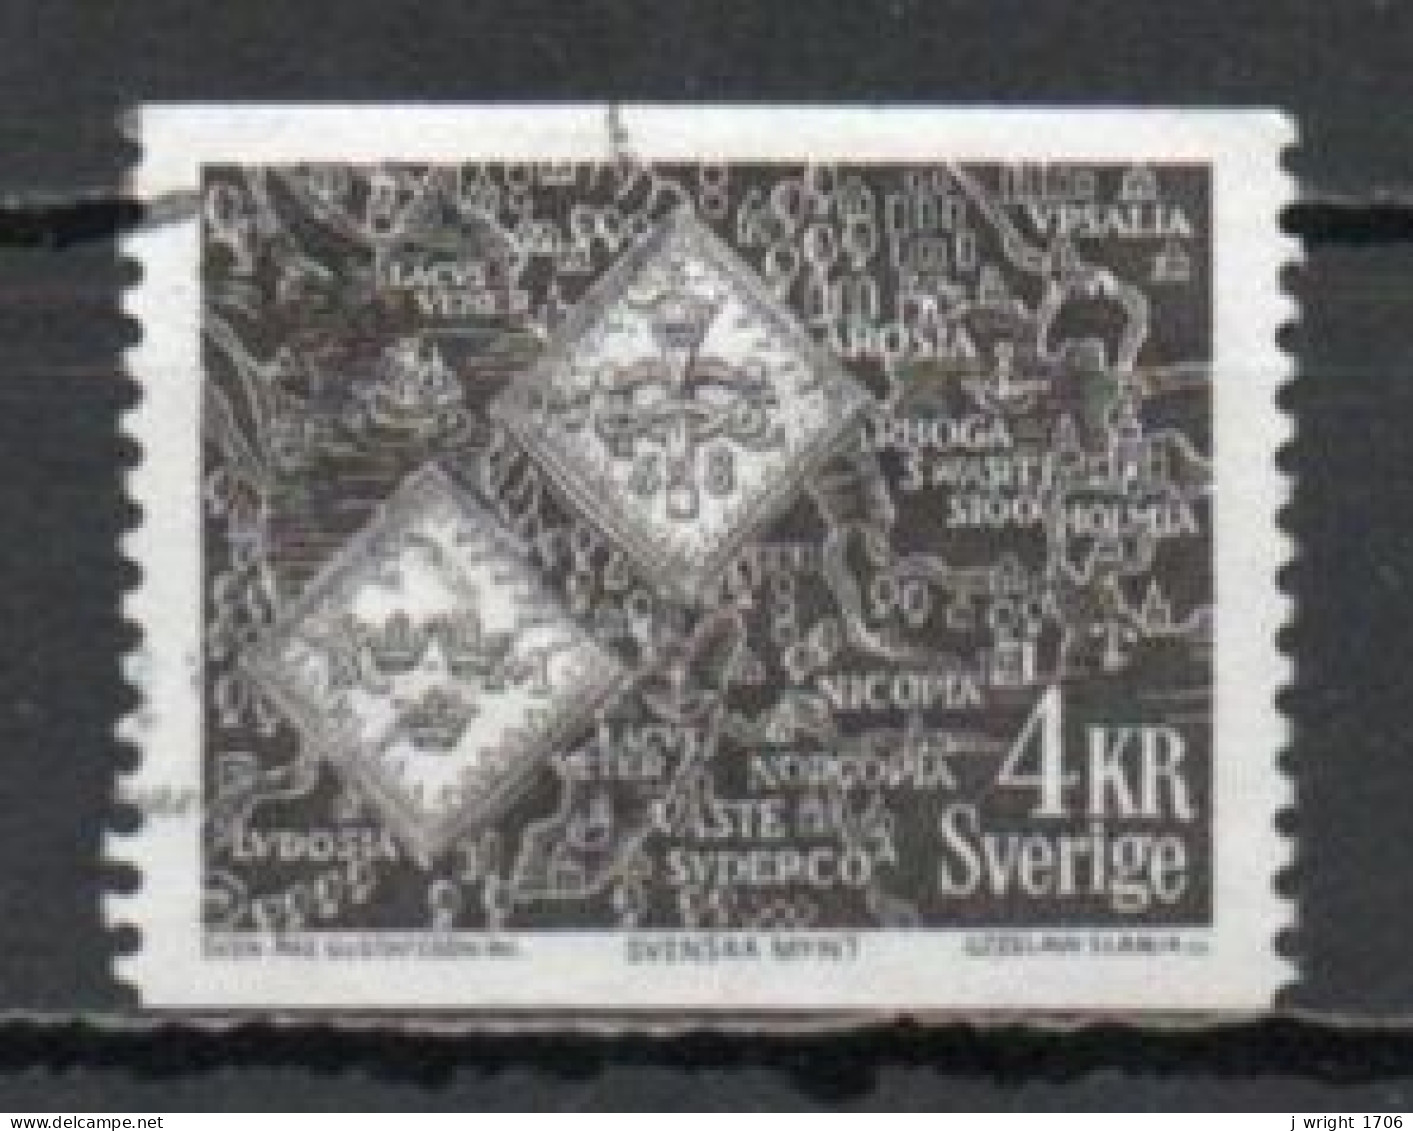 Sweden, 1971, Blood Money Coins, 4kr, USED - Gebraucht